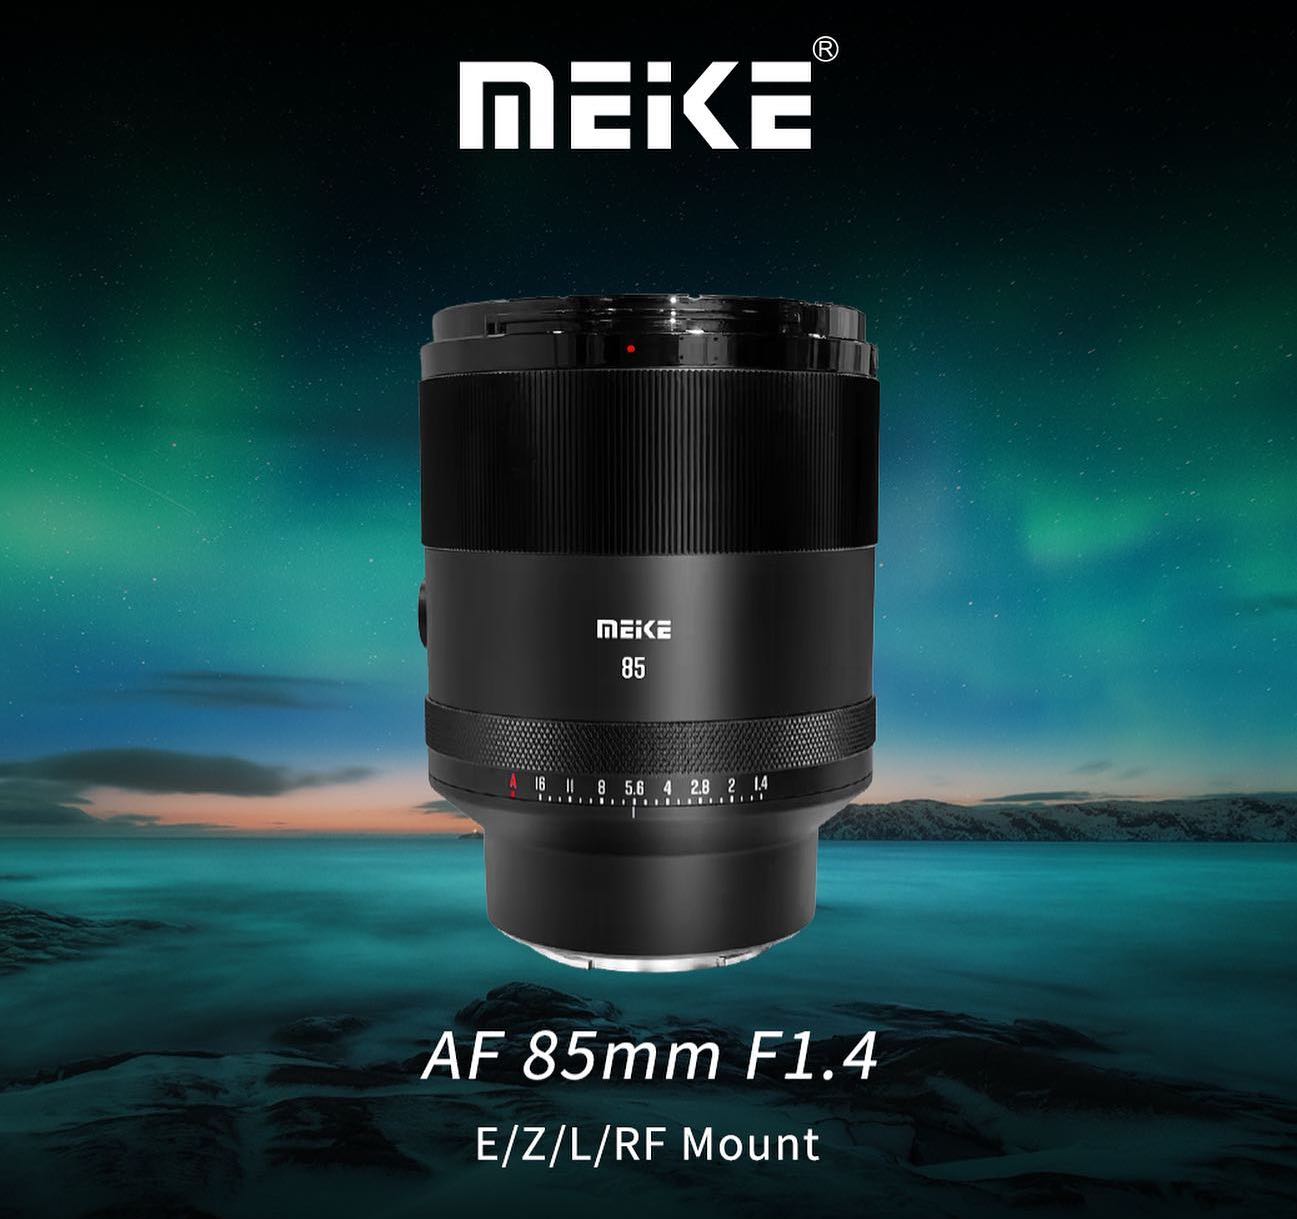 Meike announced a new 85mm f/1.4 STM full-frame mirrorless lens